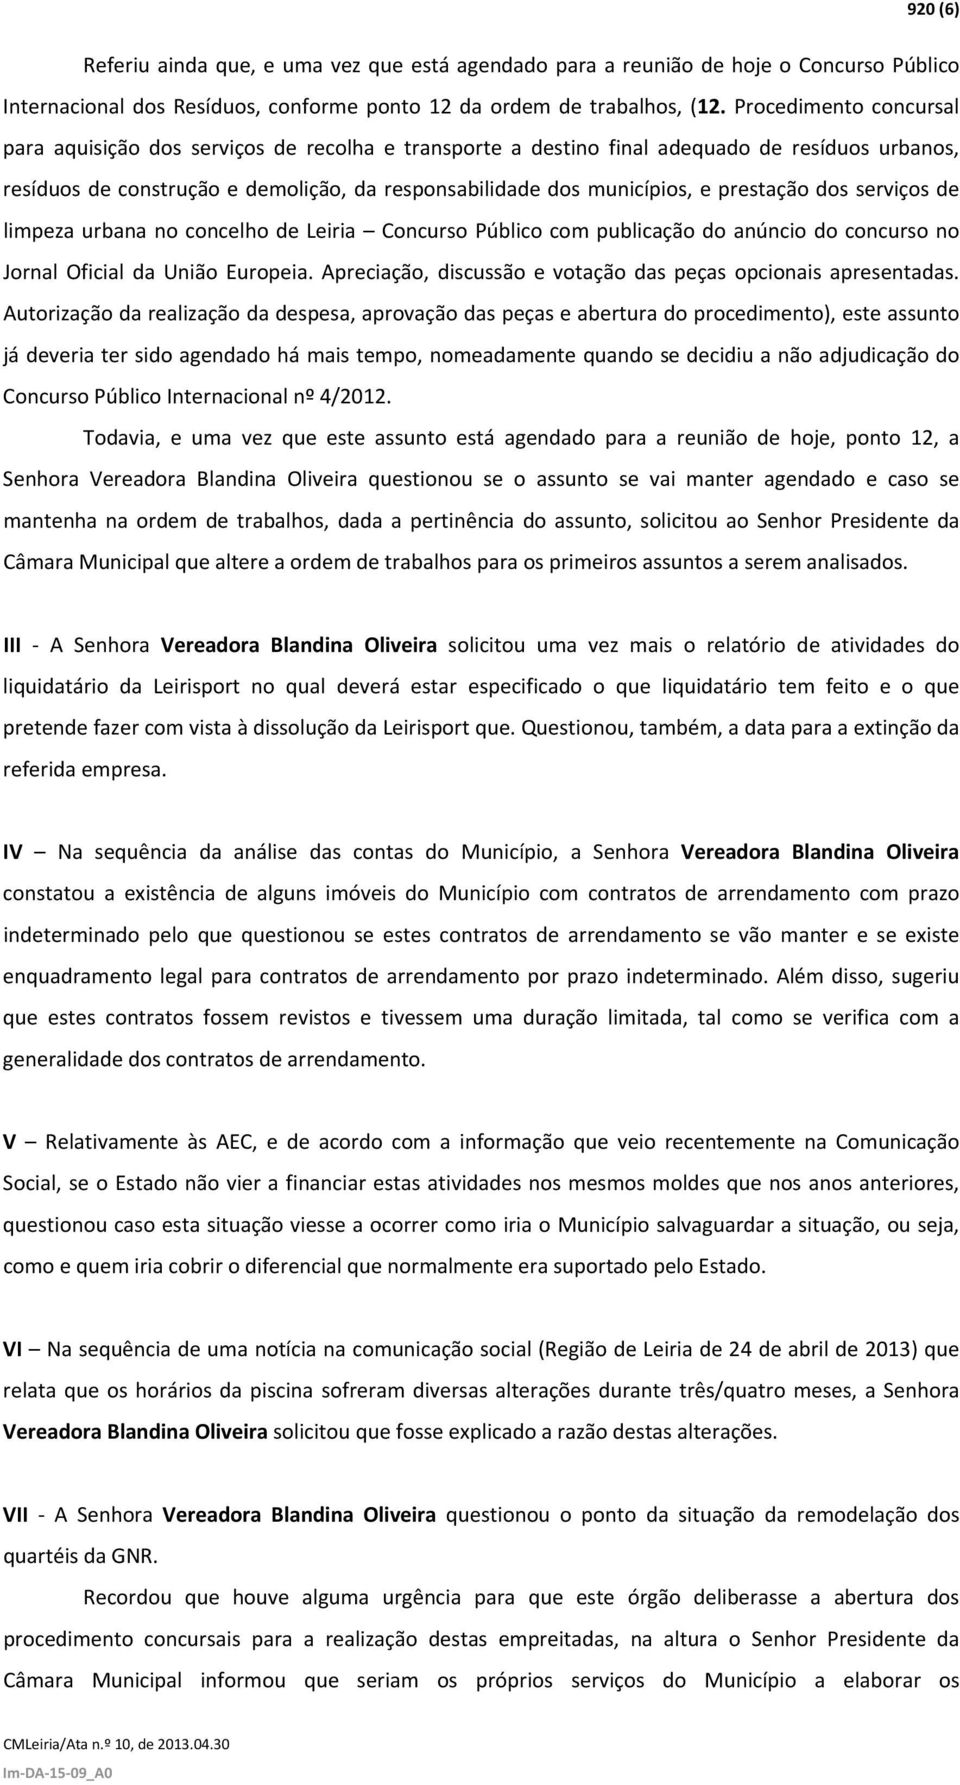 prestação dos serviços de limpeza urbana no concelho de Leiria Concurso Público com publicação do anúncio do concurso no Jornal Oficial da União Europeia.